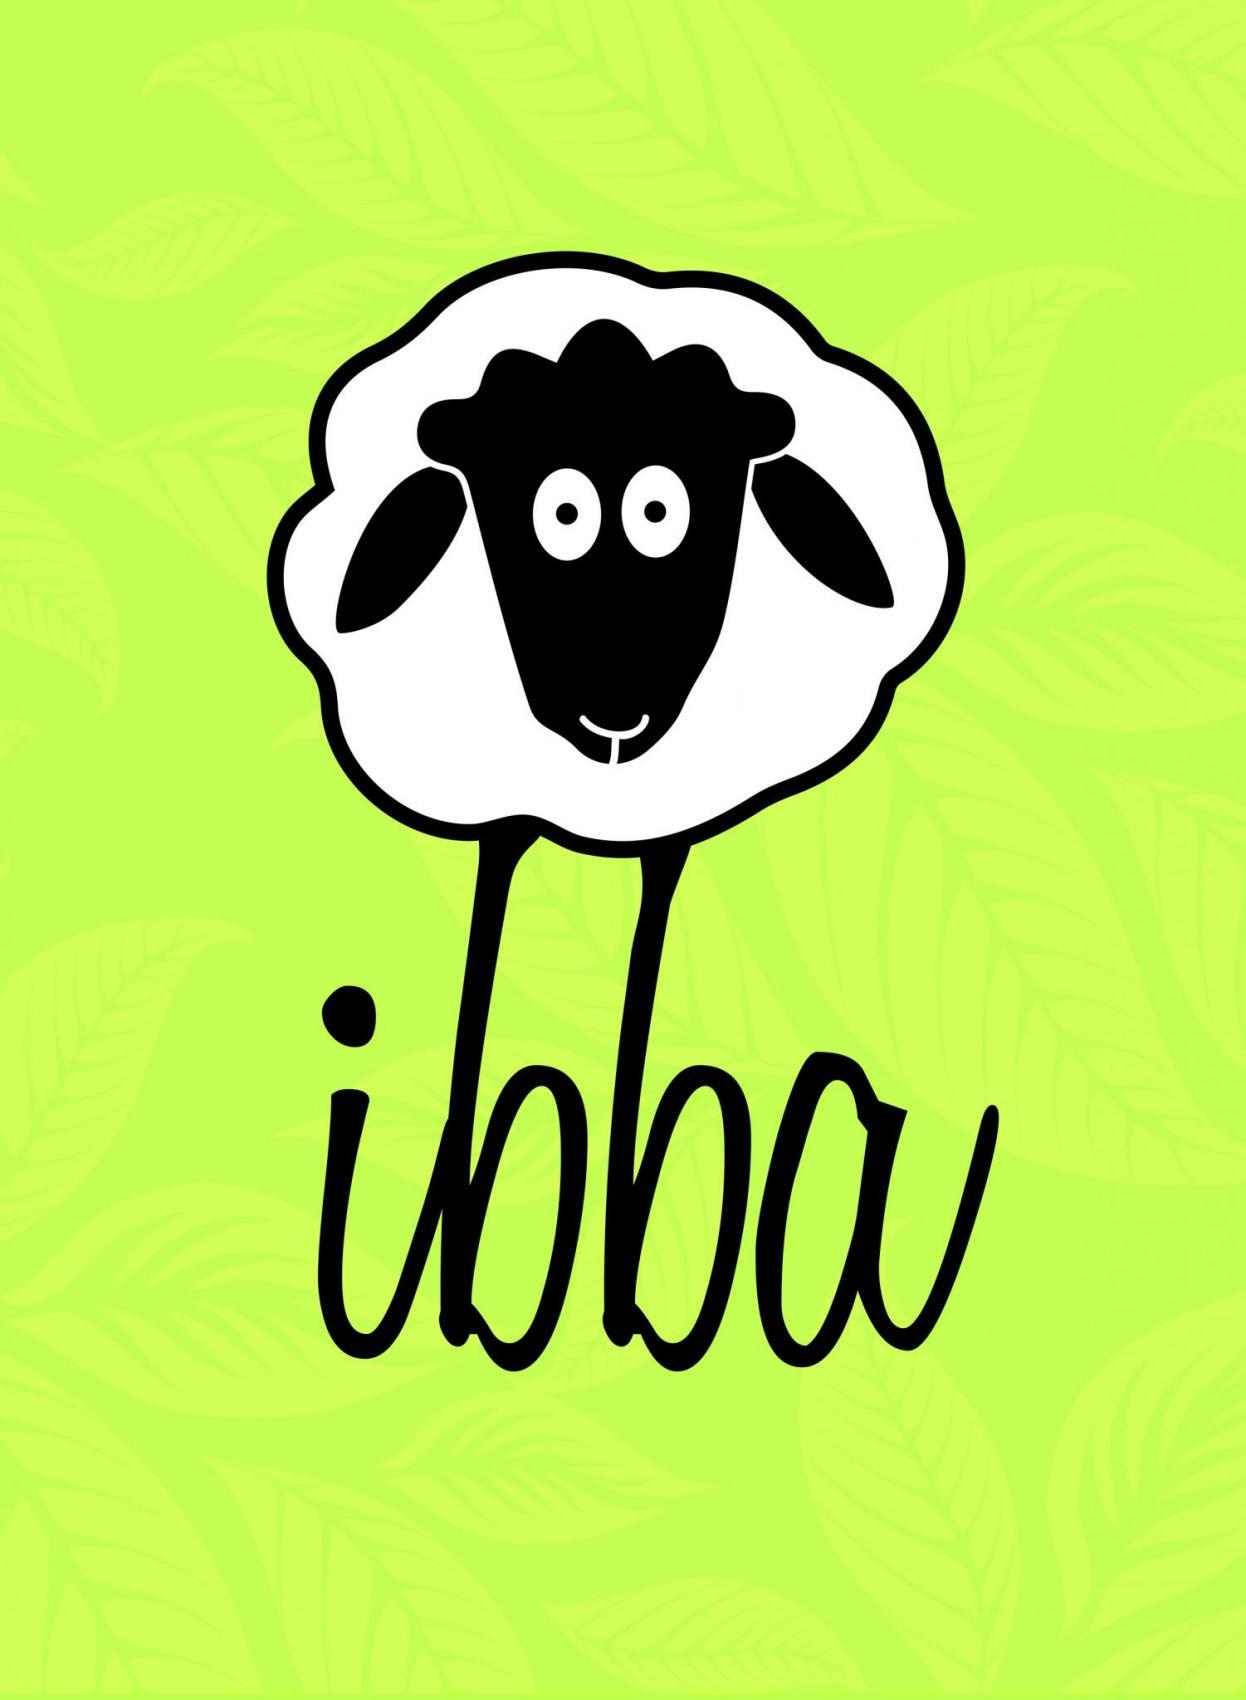 logo IBBA (Inklusives Bäuerliches Bildungs- und Arbeitsprojekt)